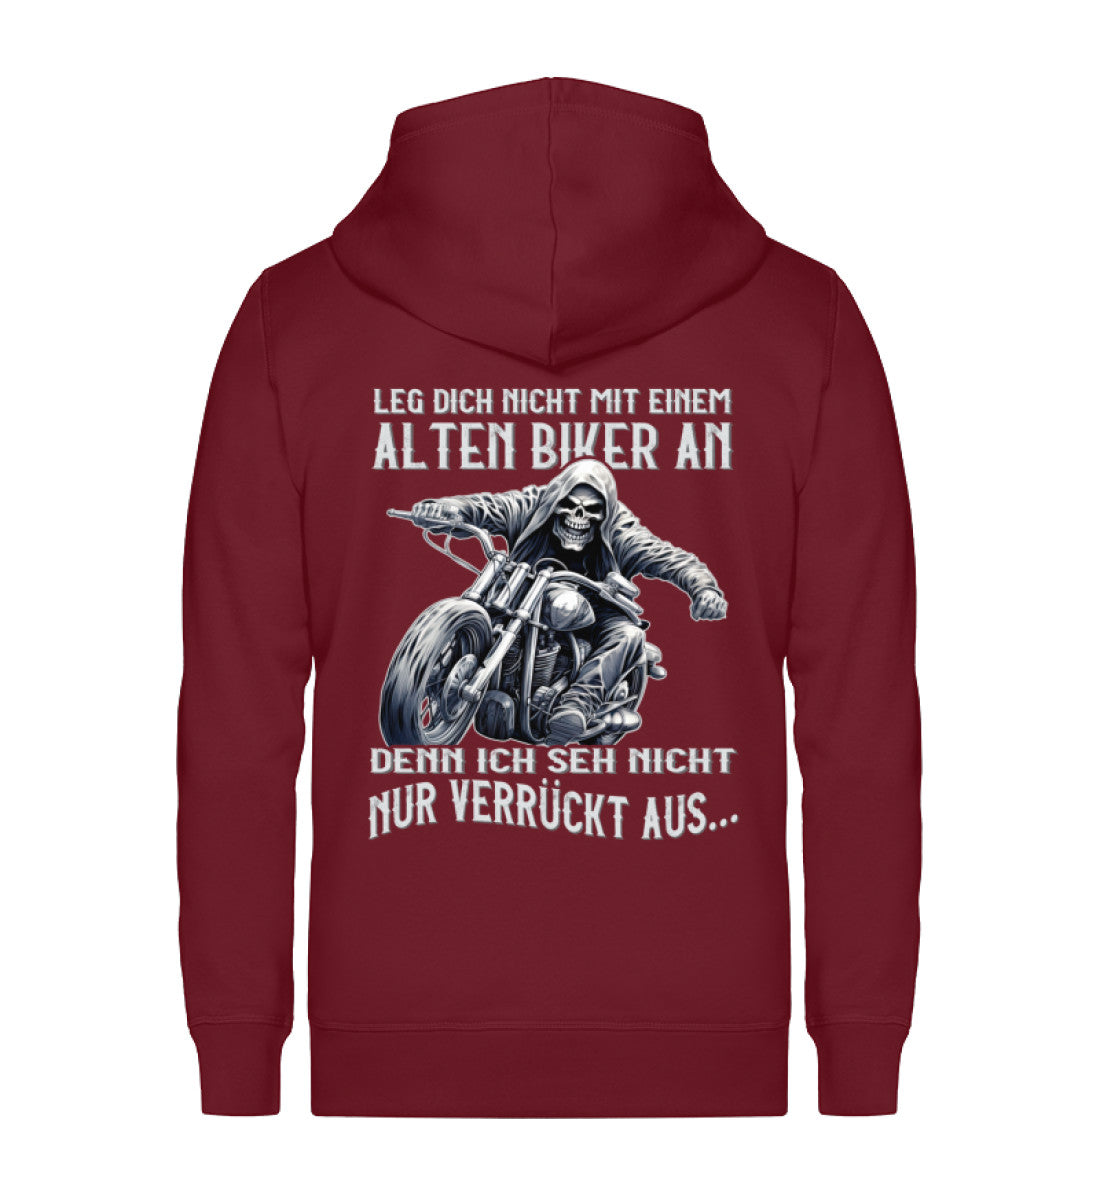 Eine Reißverschluss-Jacke für Motorradfahrer von Wingbikers mit dem Aufdruck, Leg dich nicht mit einem alten Biker an, denn ich seh nicht nur verrückt aus, in burgunder weinrot.